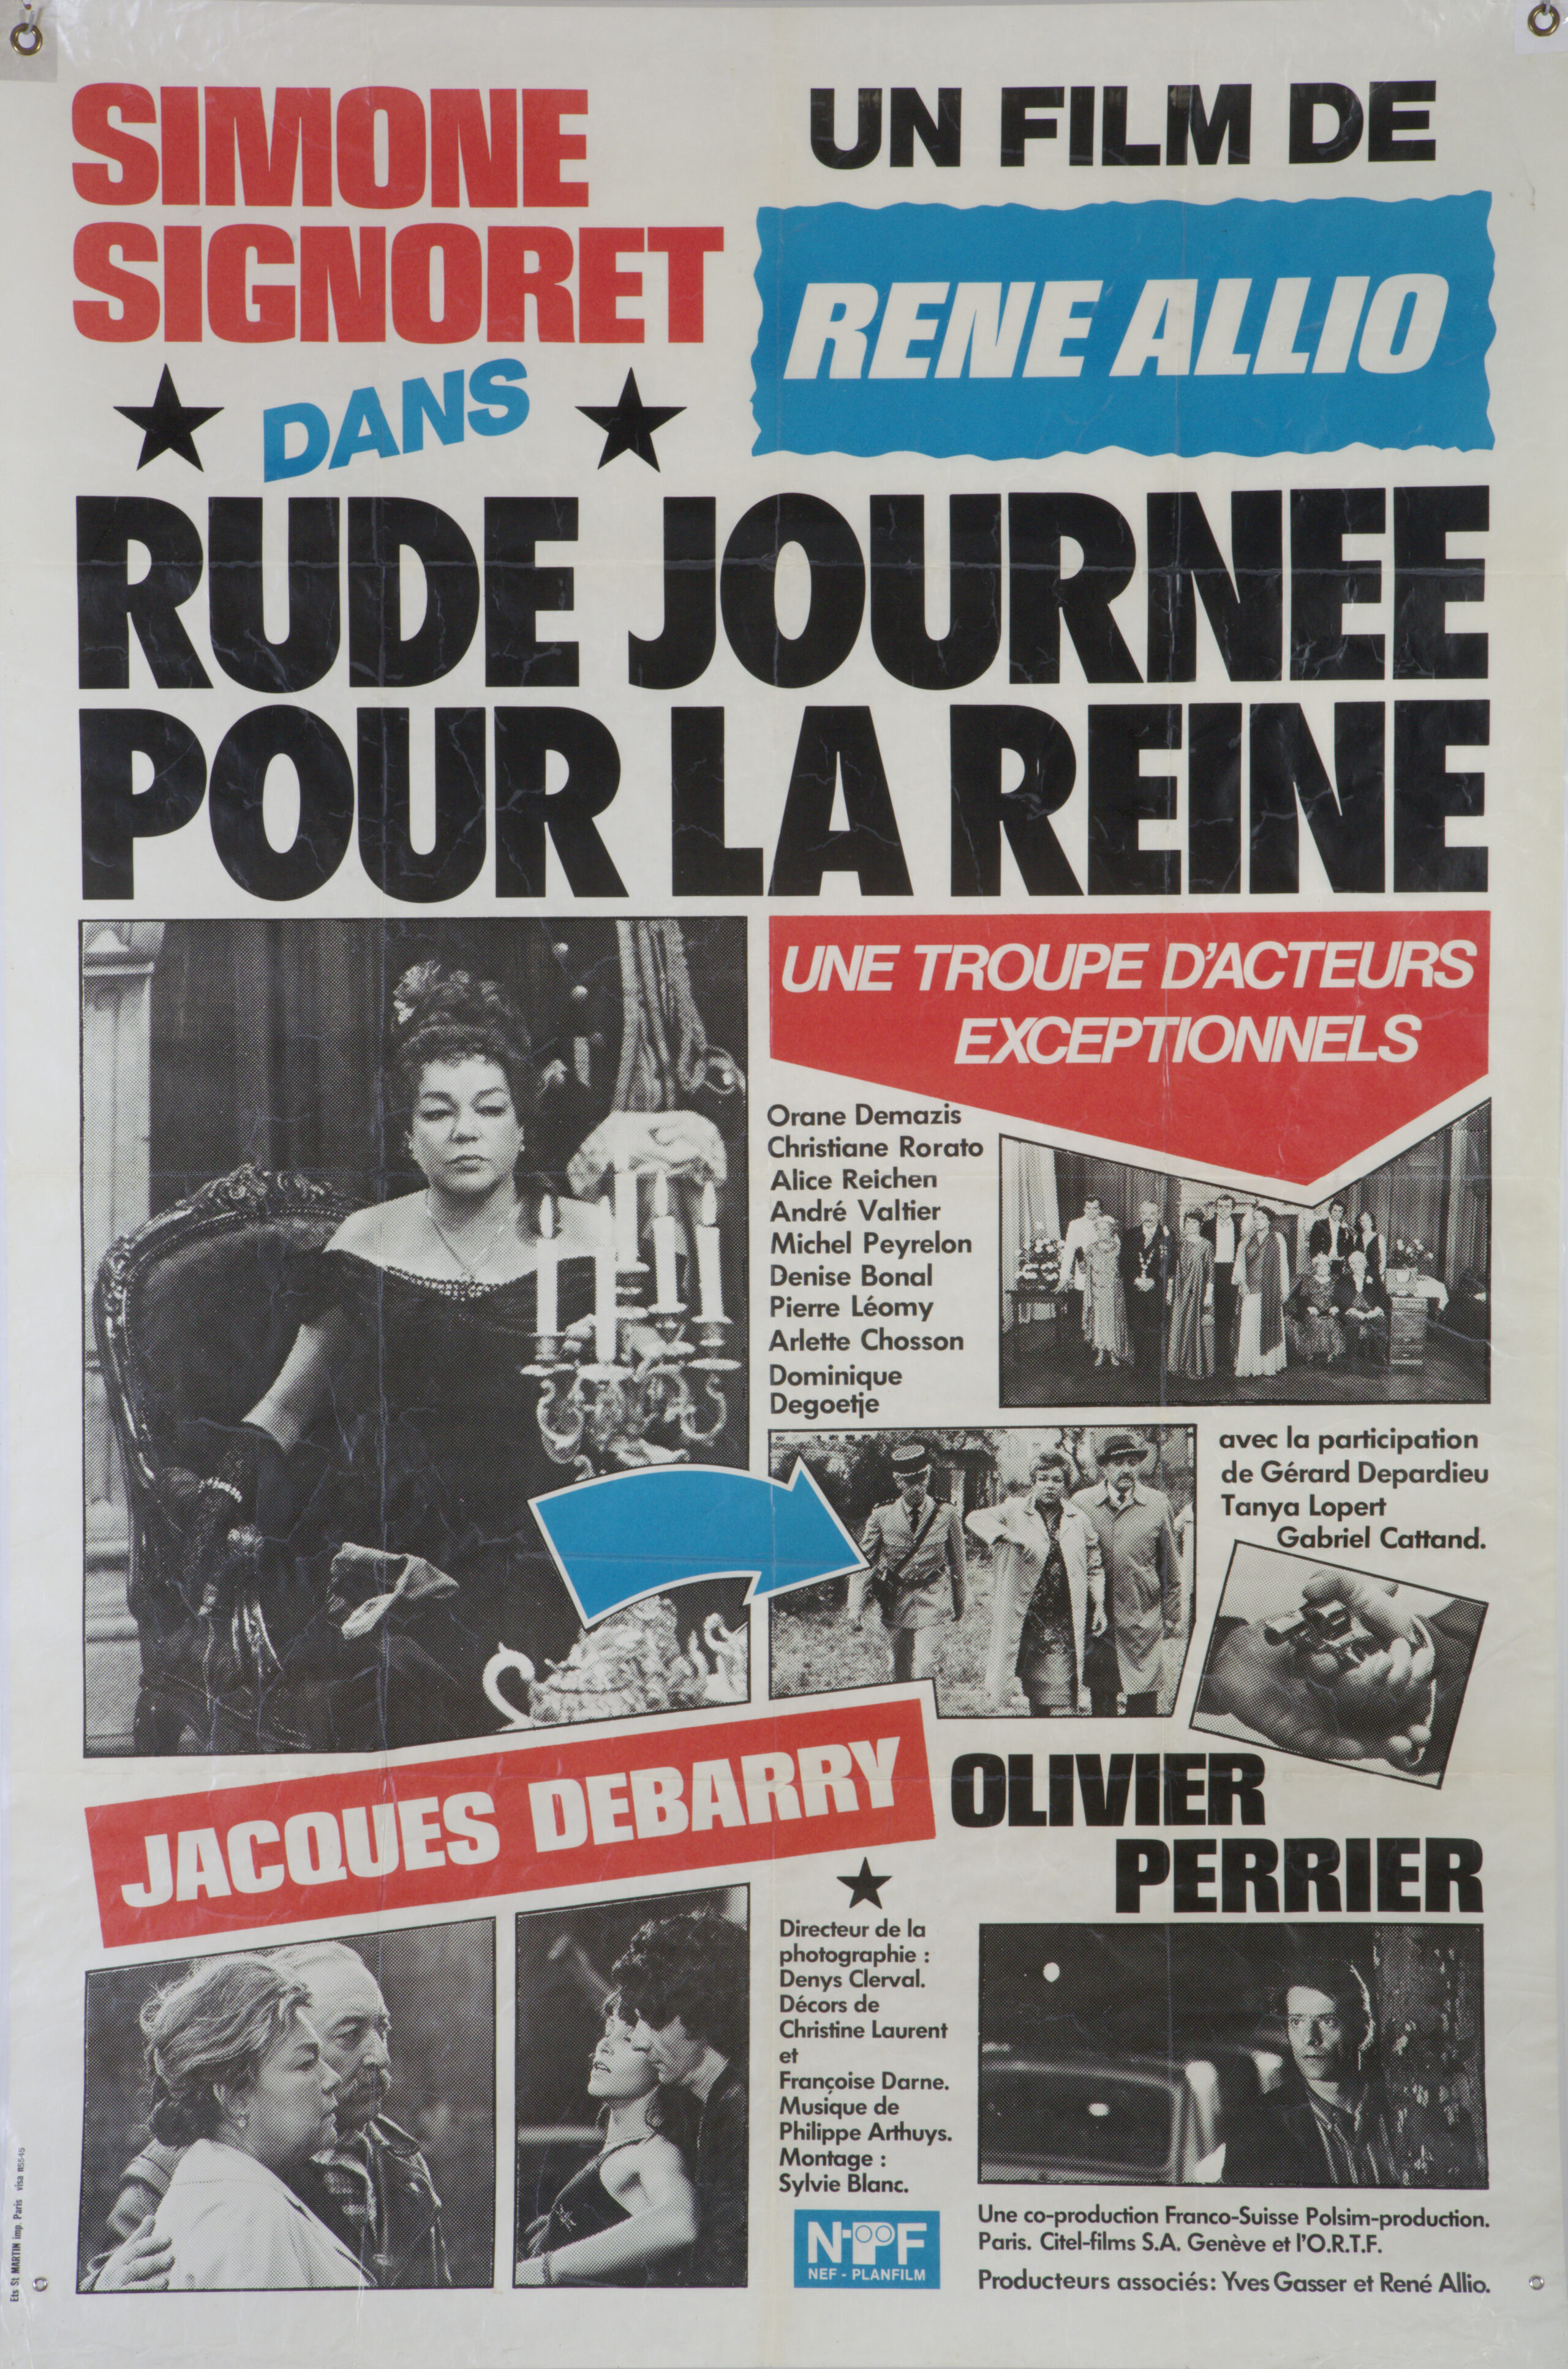 Affiche "Rude journée pour le Reine", film René de Allio, format 119 cm x 158 cm, fonds Annette Guillaumin